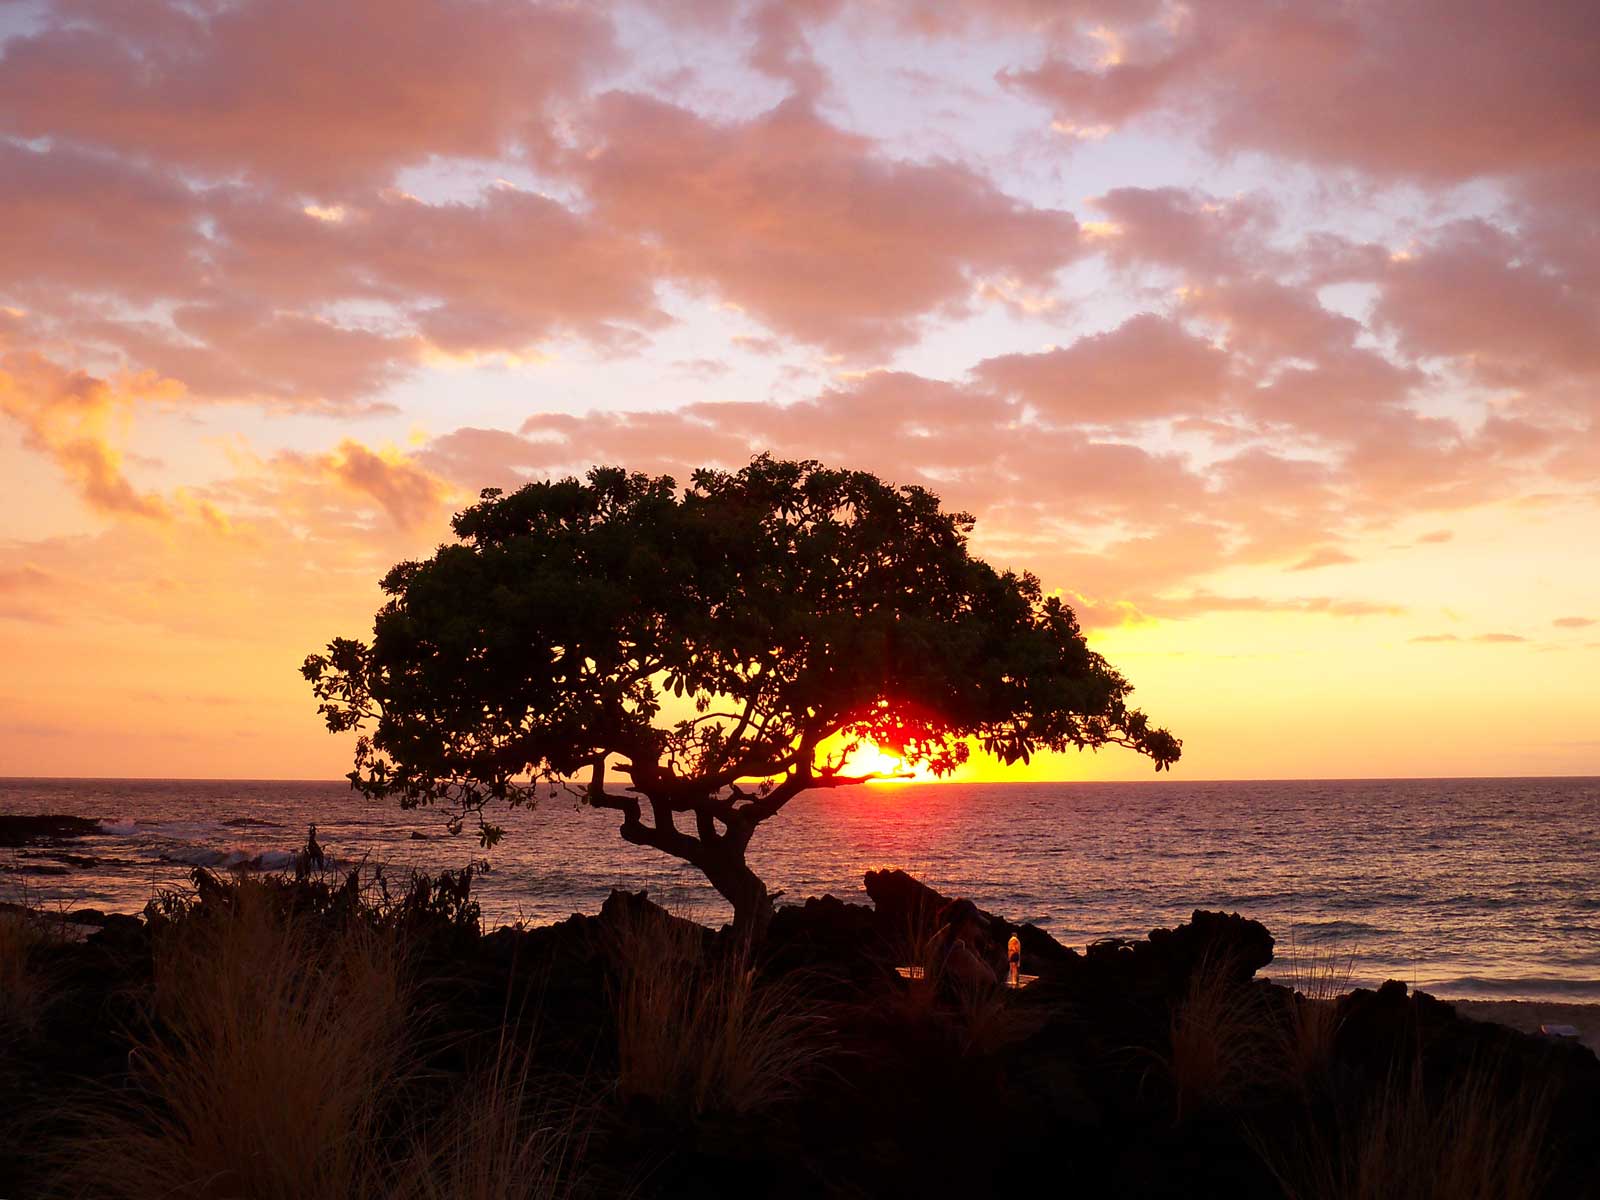 http://www.hawaiipictureoftheday.com/wp-content/uploads/2011/11/kua-bay-beach-sunset.jpg